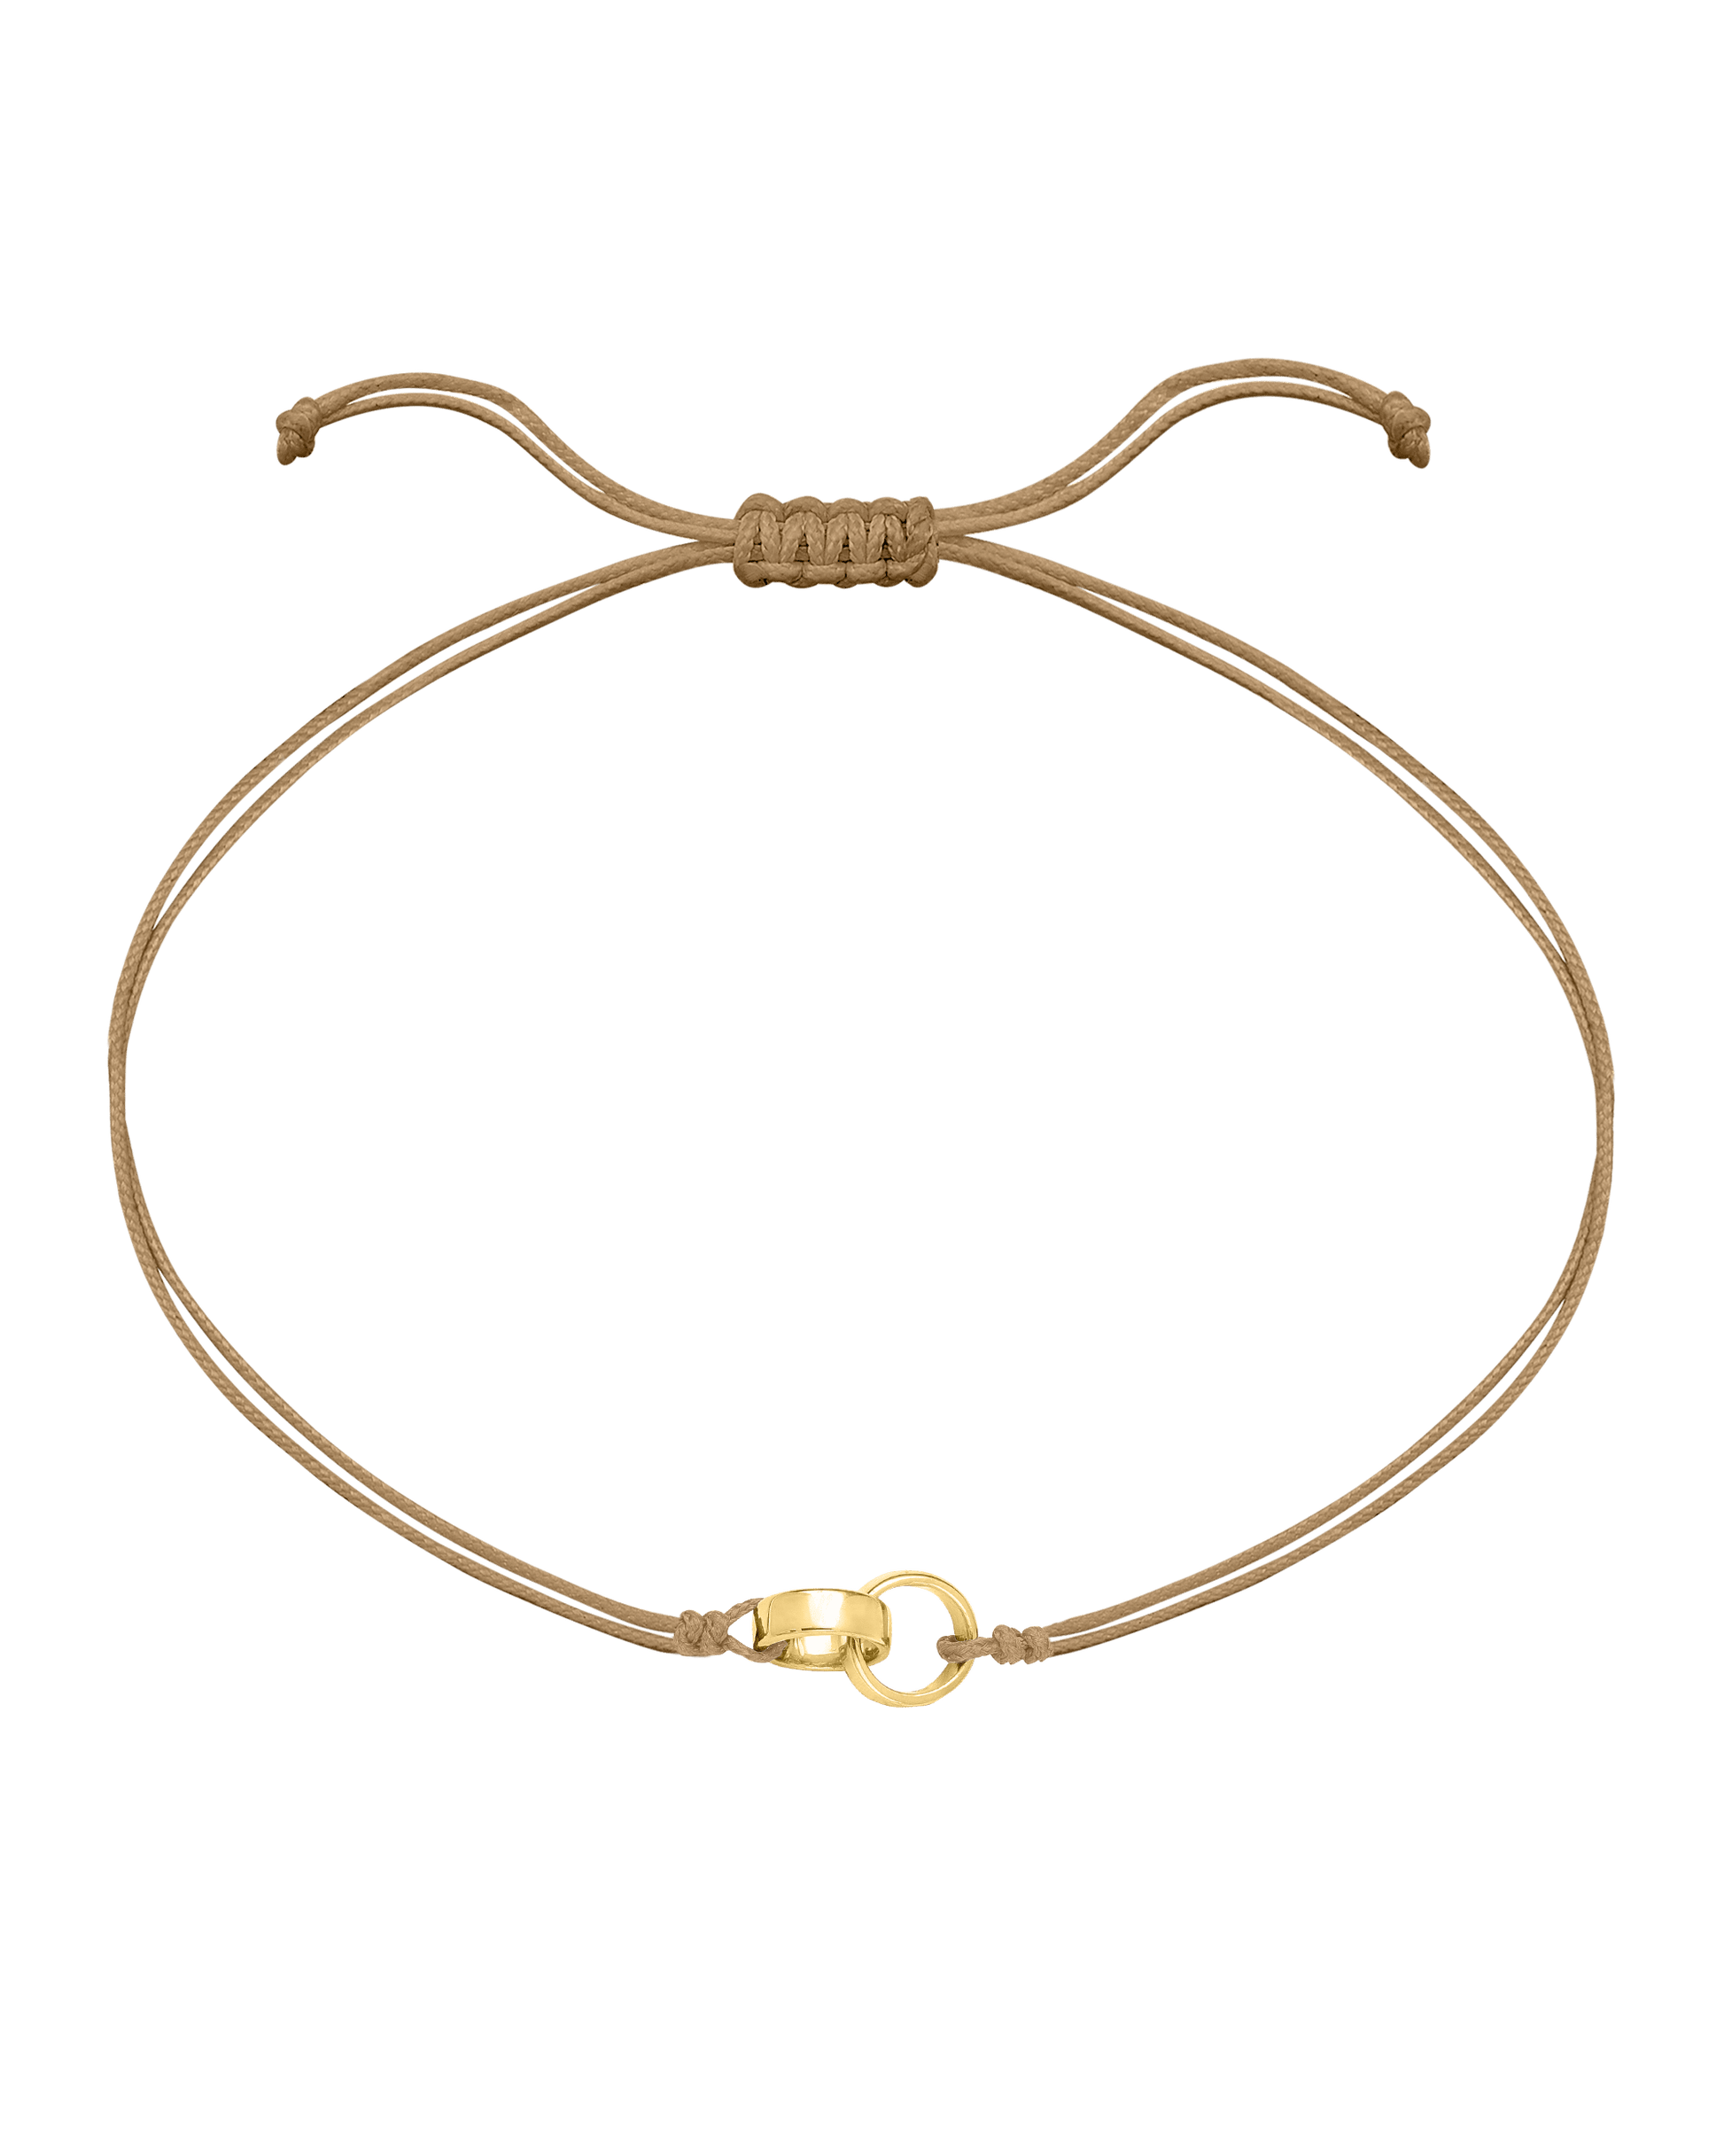 Engravable Links of Love - 18K Gold Vermeil Bracelets magal-dev 2 Camel 